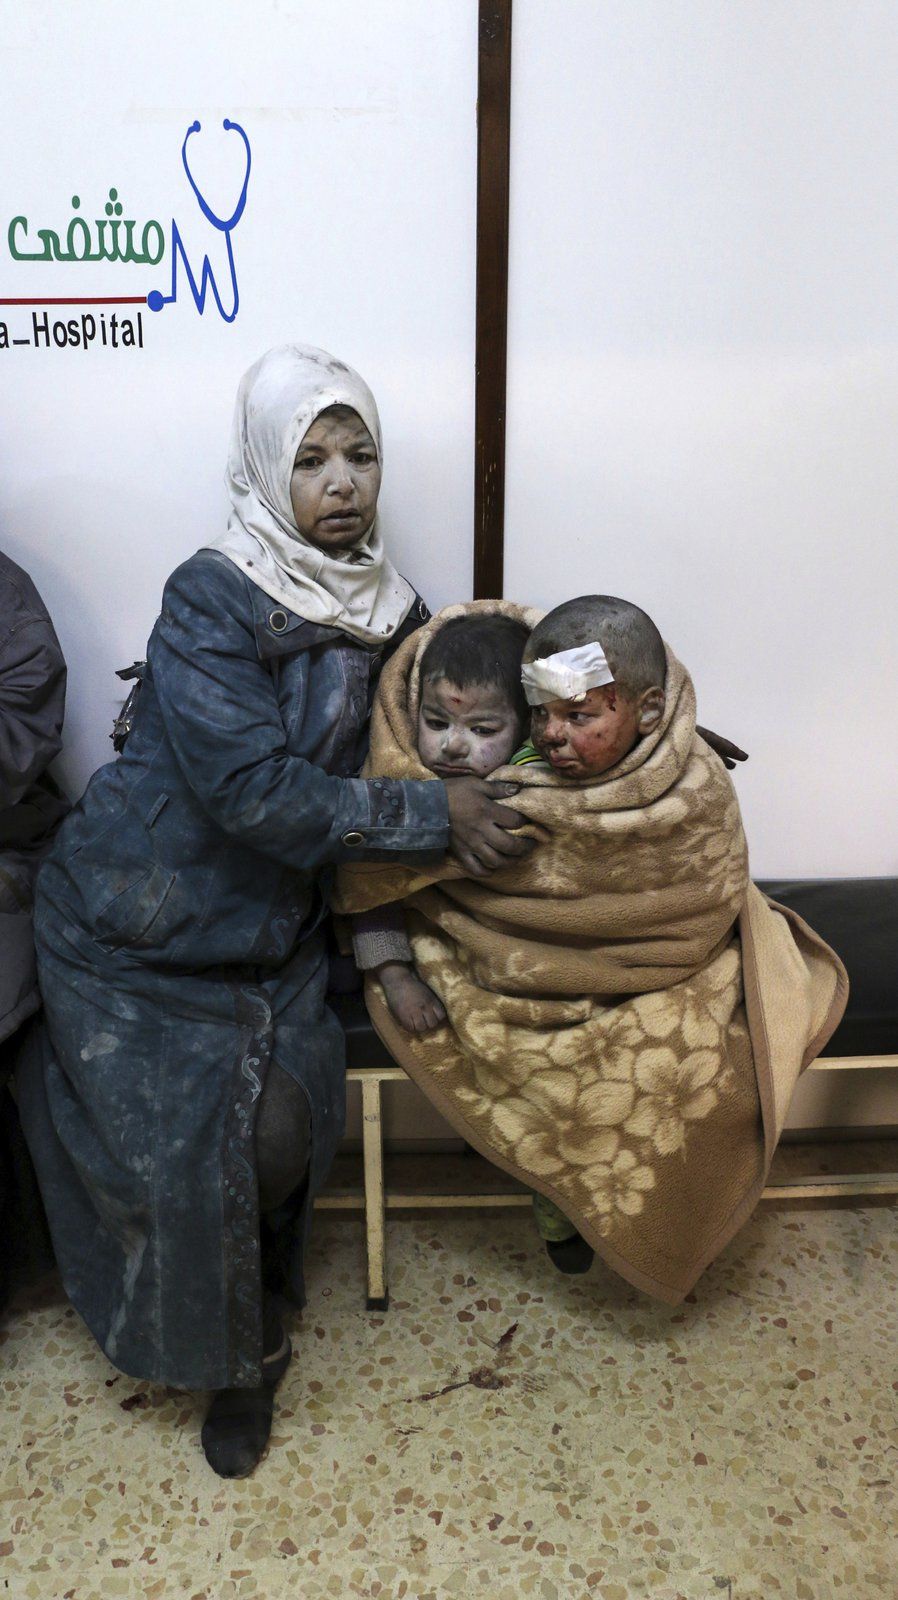 V Sýrii vyrůstá „ztracená generace“ dětí traumatizovaných hrůzami války.